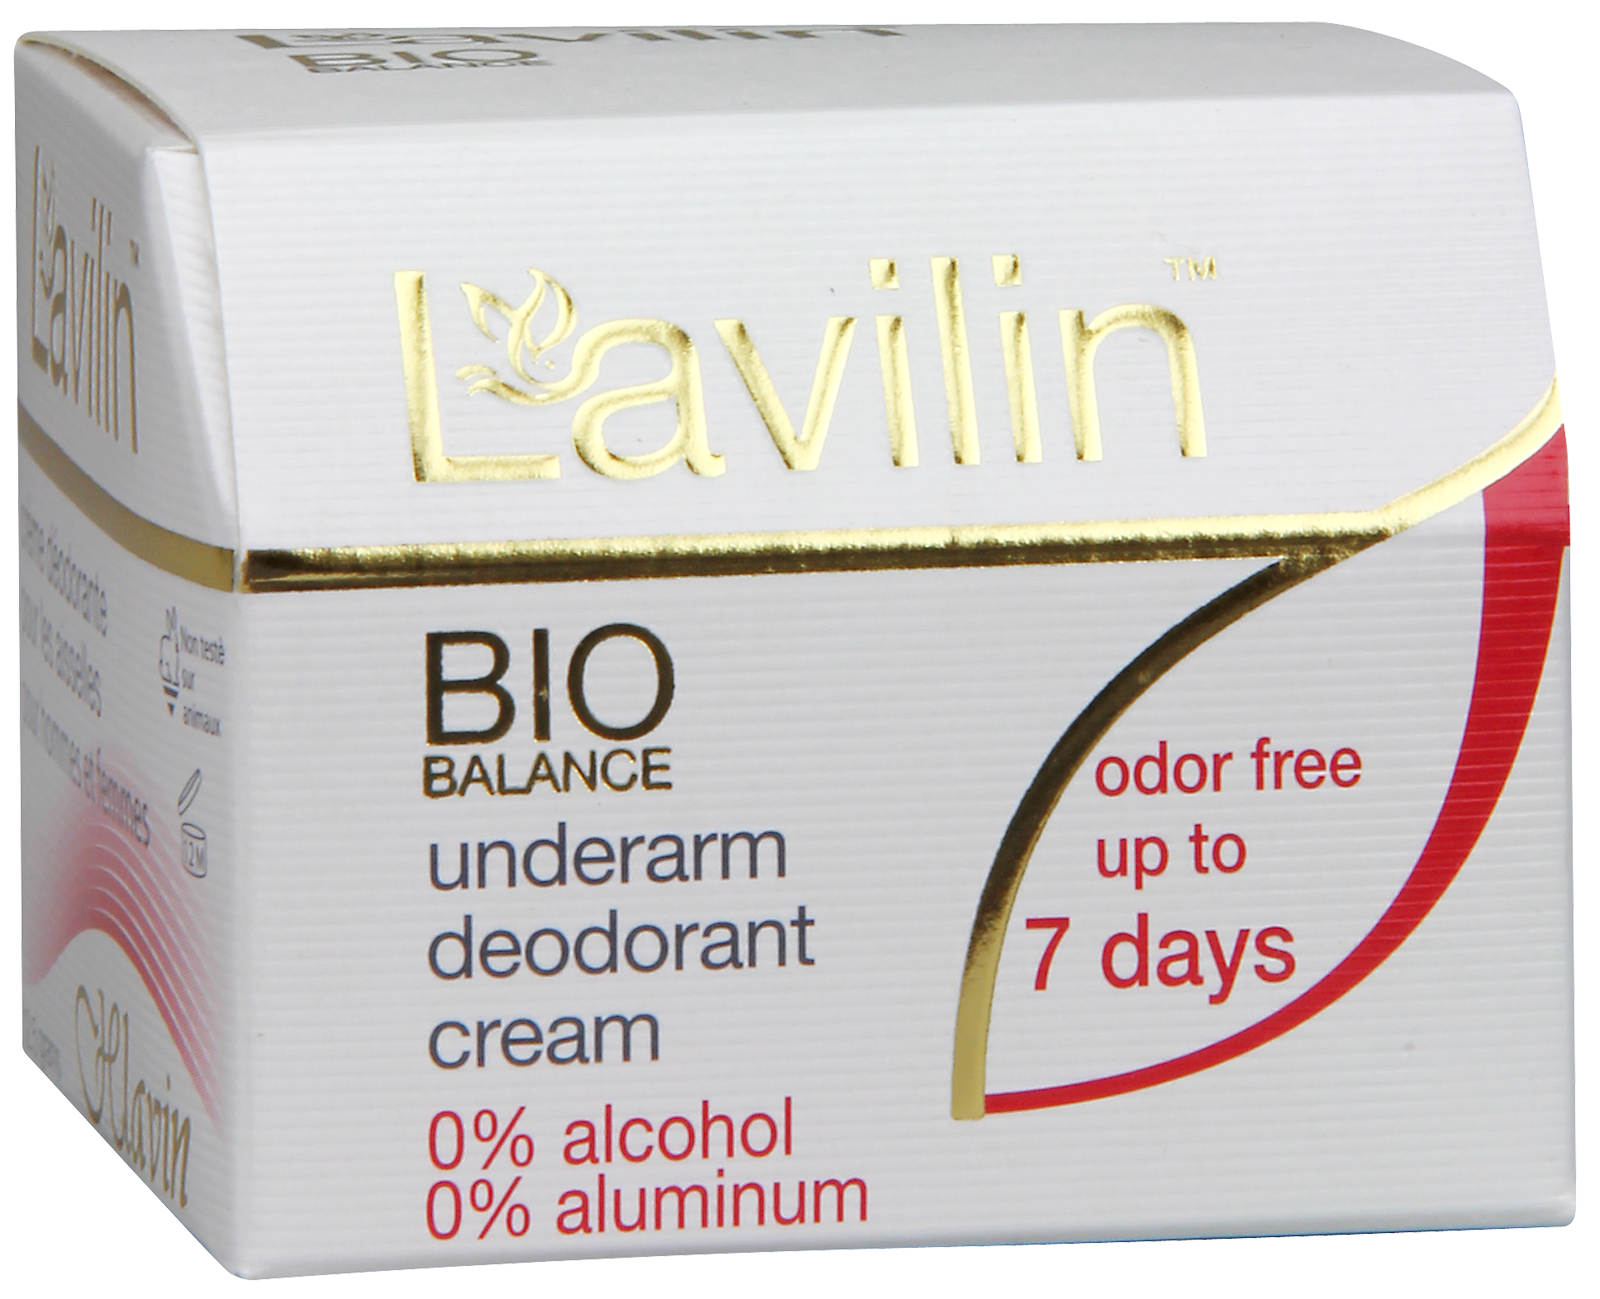 Box of Lavilin Underarm Deodorant Cream - Large Size